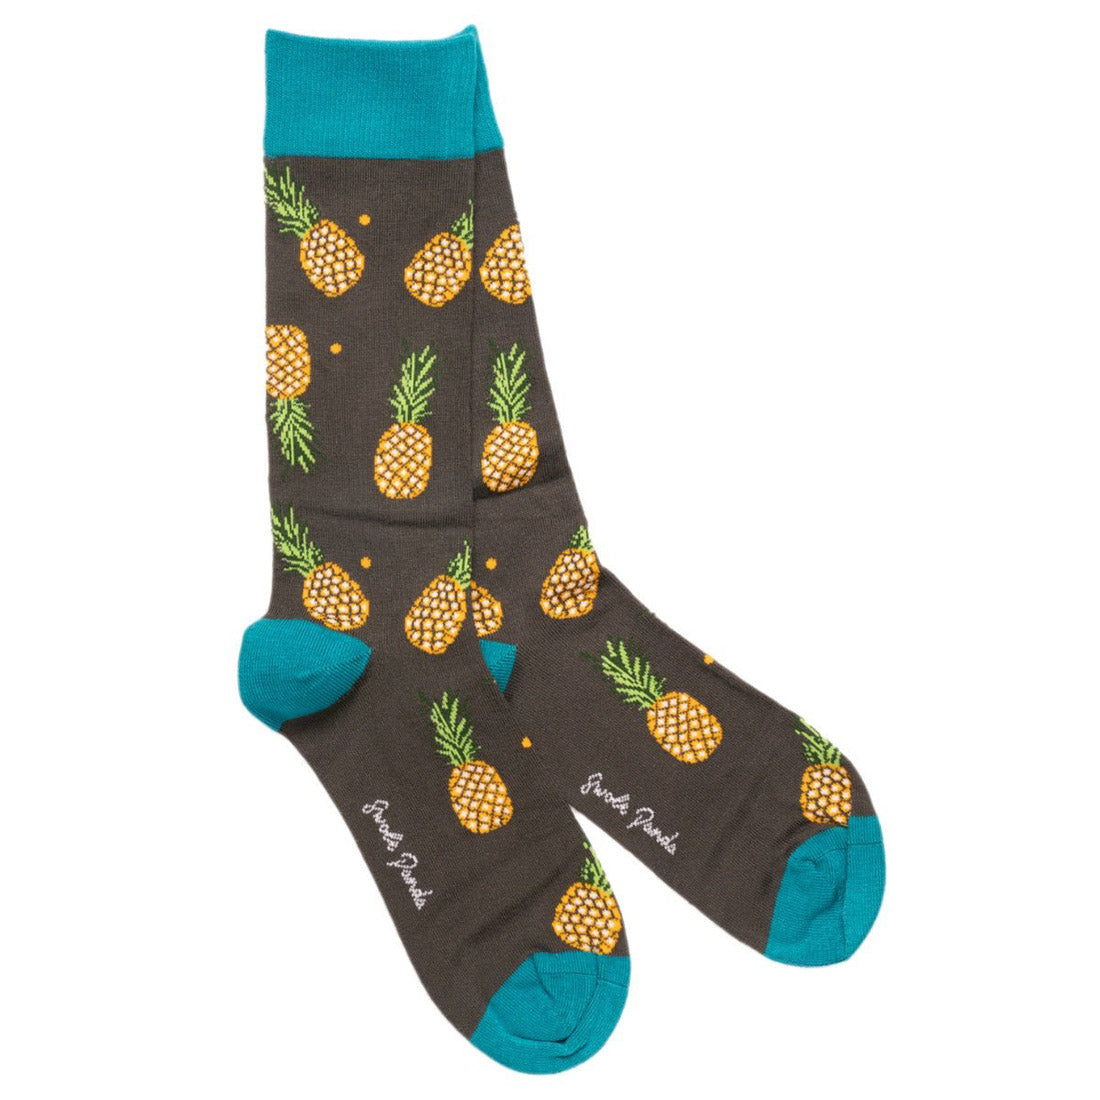 socks-pineapple-bamboo-socks-1_d5c40e2e-1bdd-4df9-94ef-032790a40016.jpg